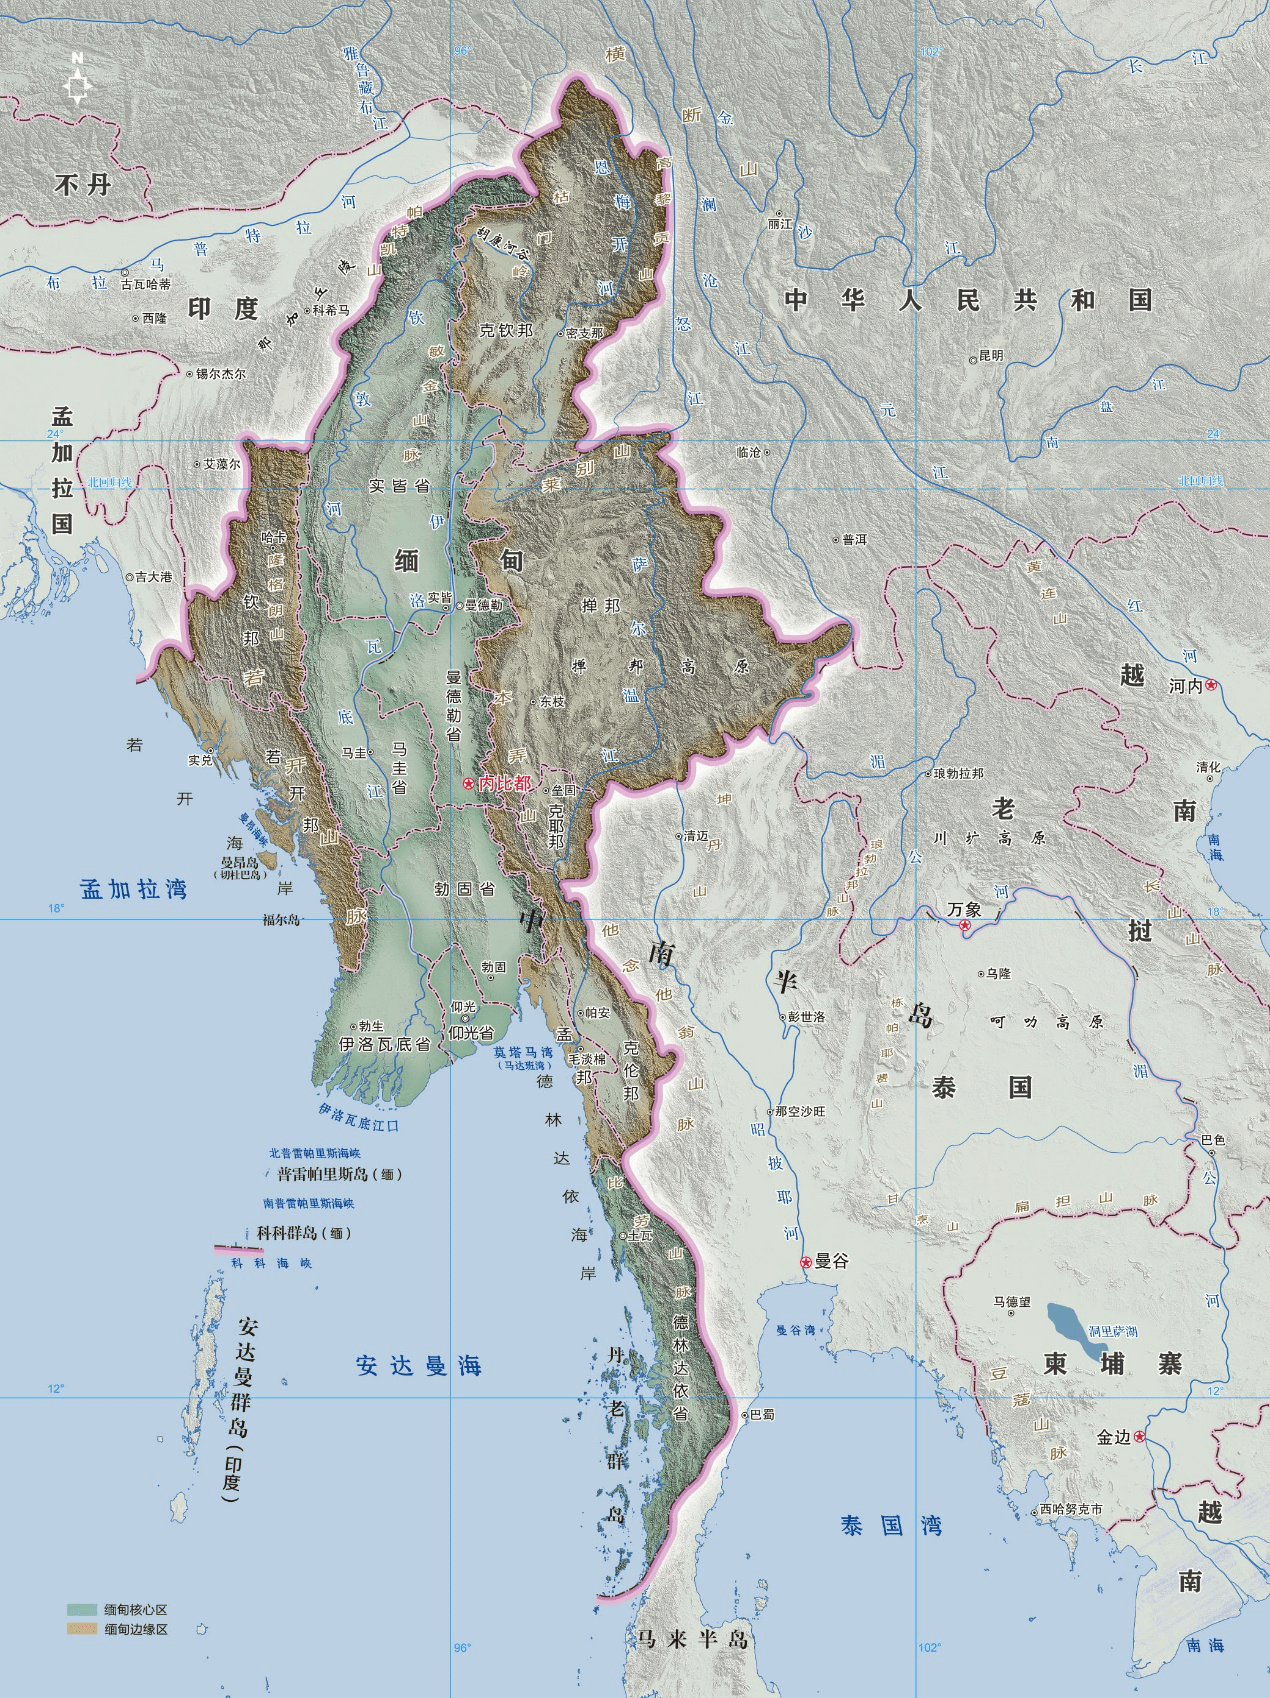 温骏轩:缅甸的地缘政治